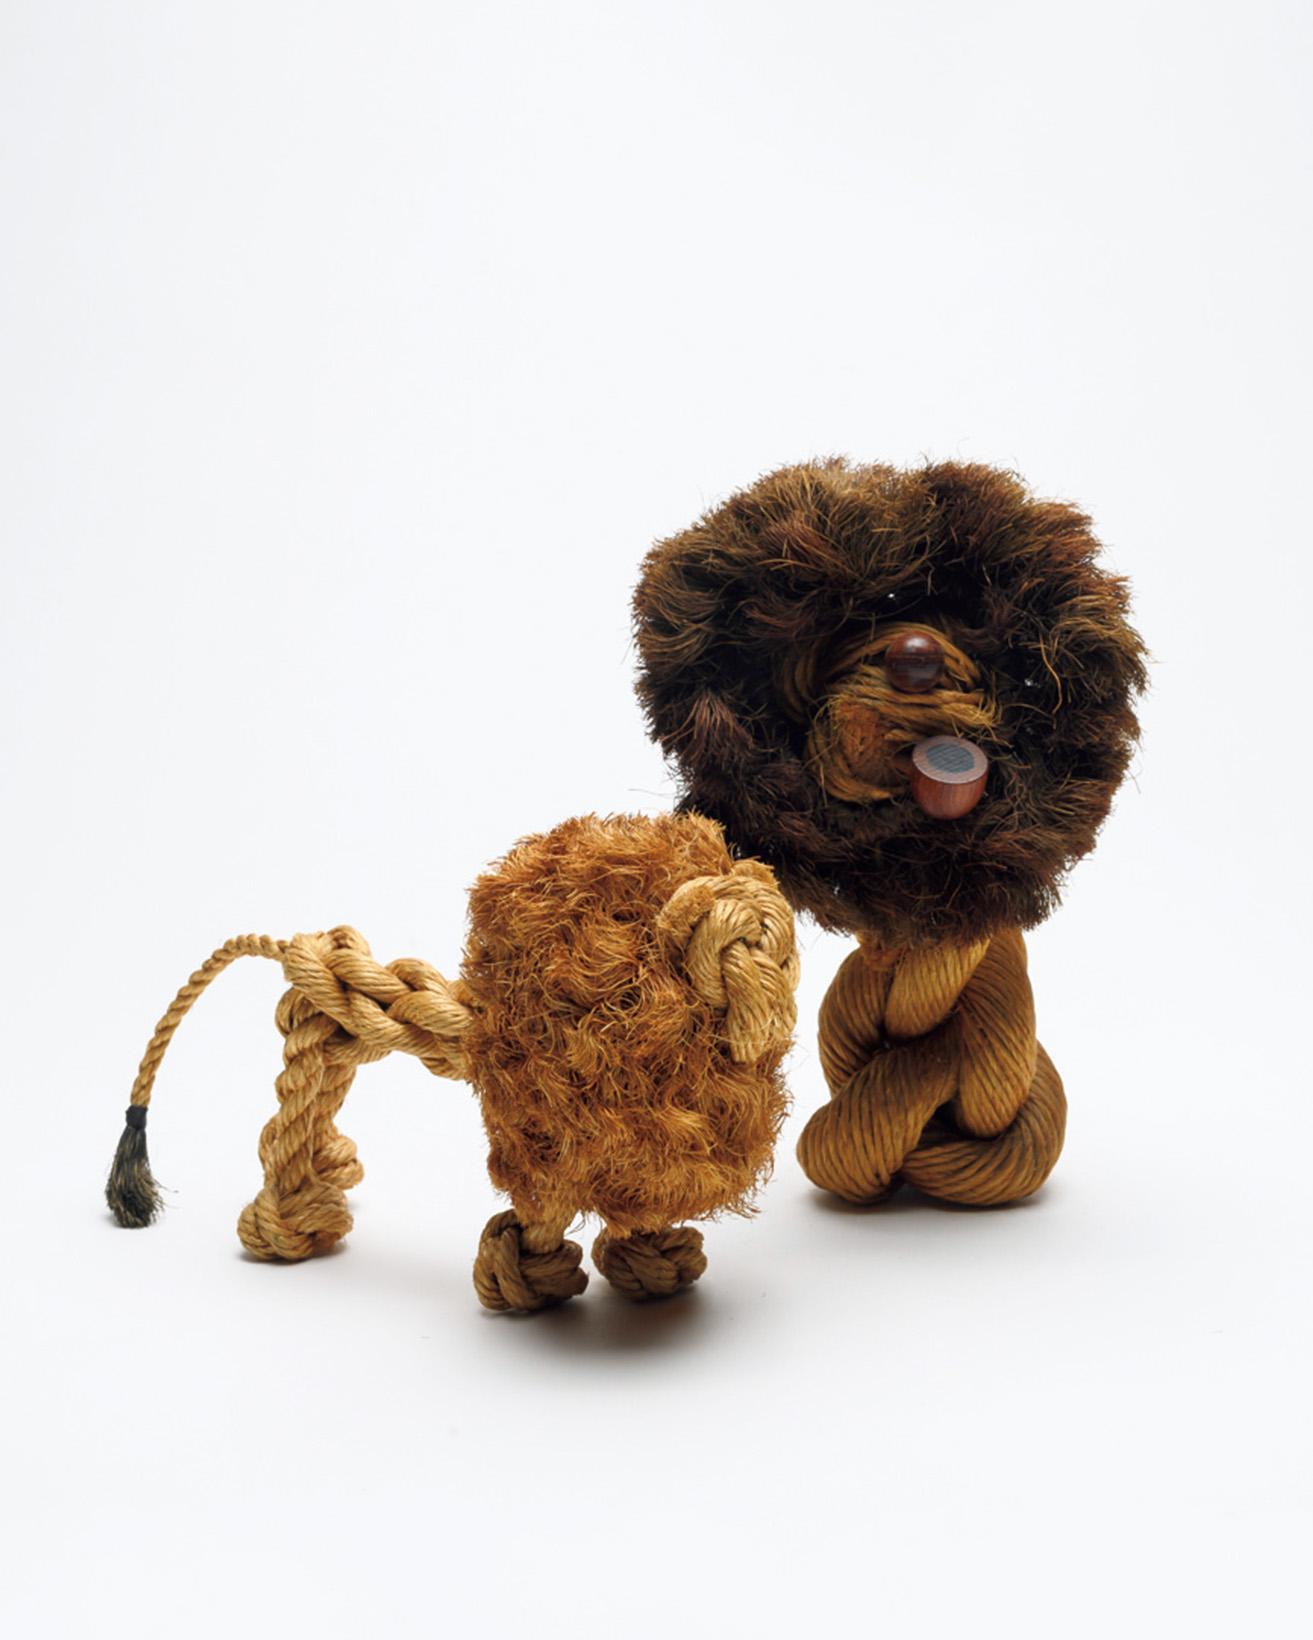 TOY ANIMAL by Kay Bojesen
極めて珍しい、カイ・ボイスンによる麻縄の動物玩具。「ボイスンといえば、木製のモンキーが有名だが、いずれの作品も子どものみならず、大人の感性で見ても素晴らしいものである」と、織田。